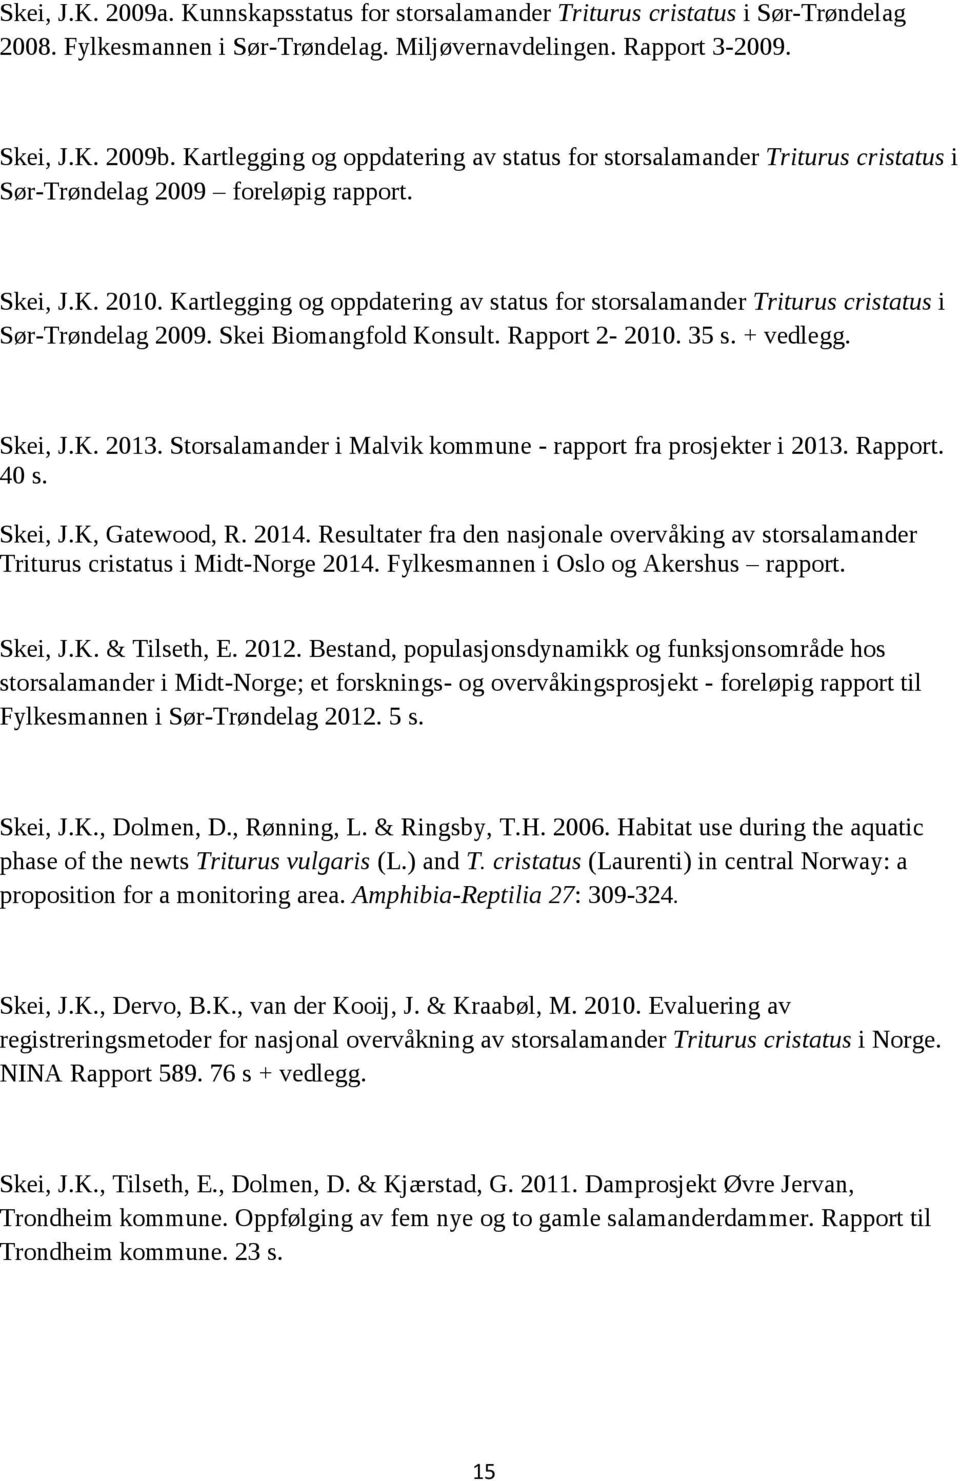 Kartlegging og oppdatering av status for storsalamander Triturus cristatus i Sør-Trøndelag 2009. Skei Biomangfold Konsult. Rapport 2-2010. 35 s. + vedlegg. Skei, J.K. 2013.